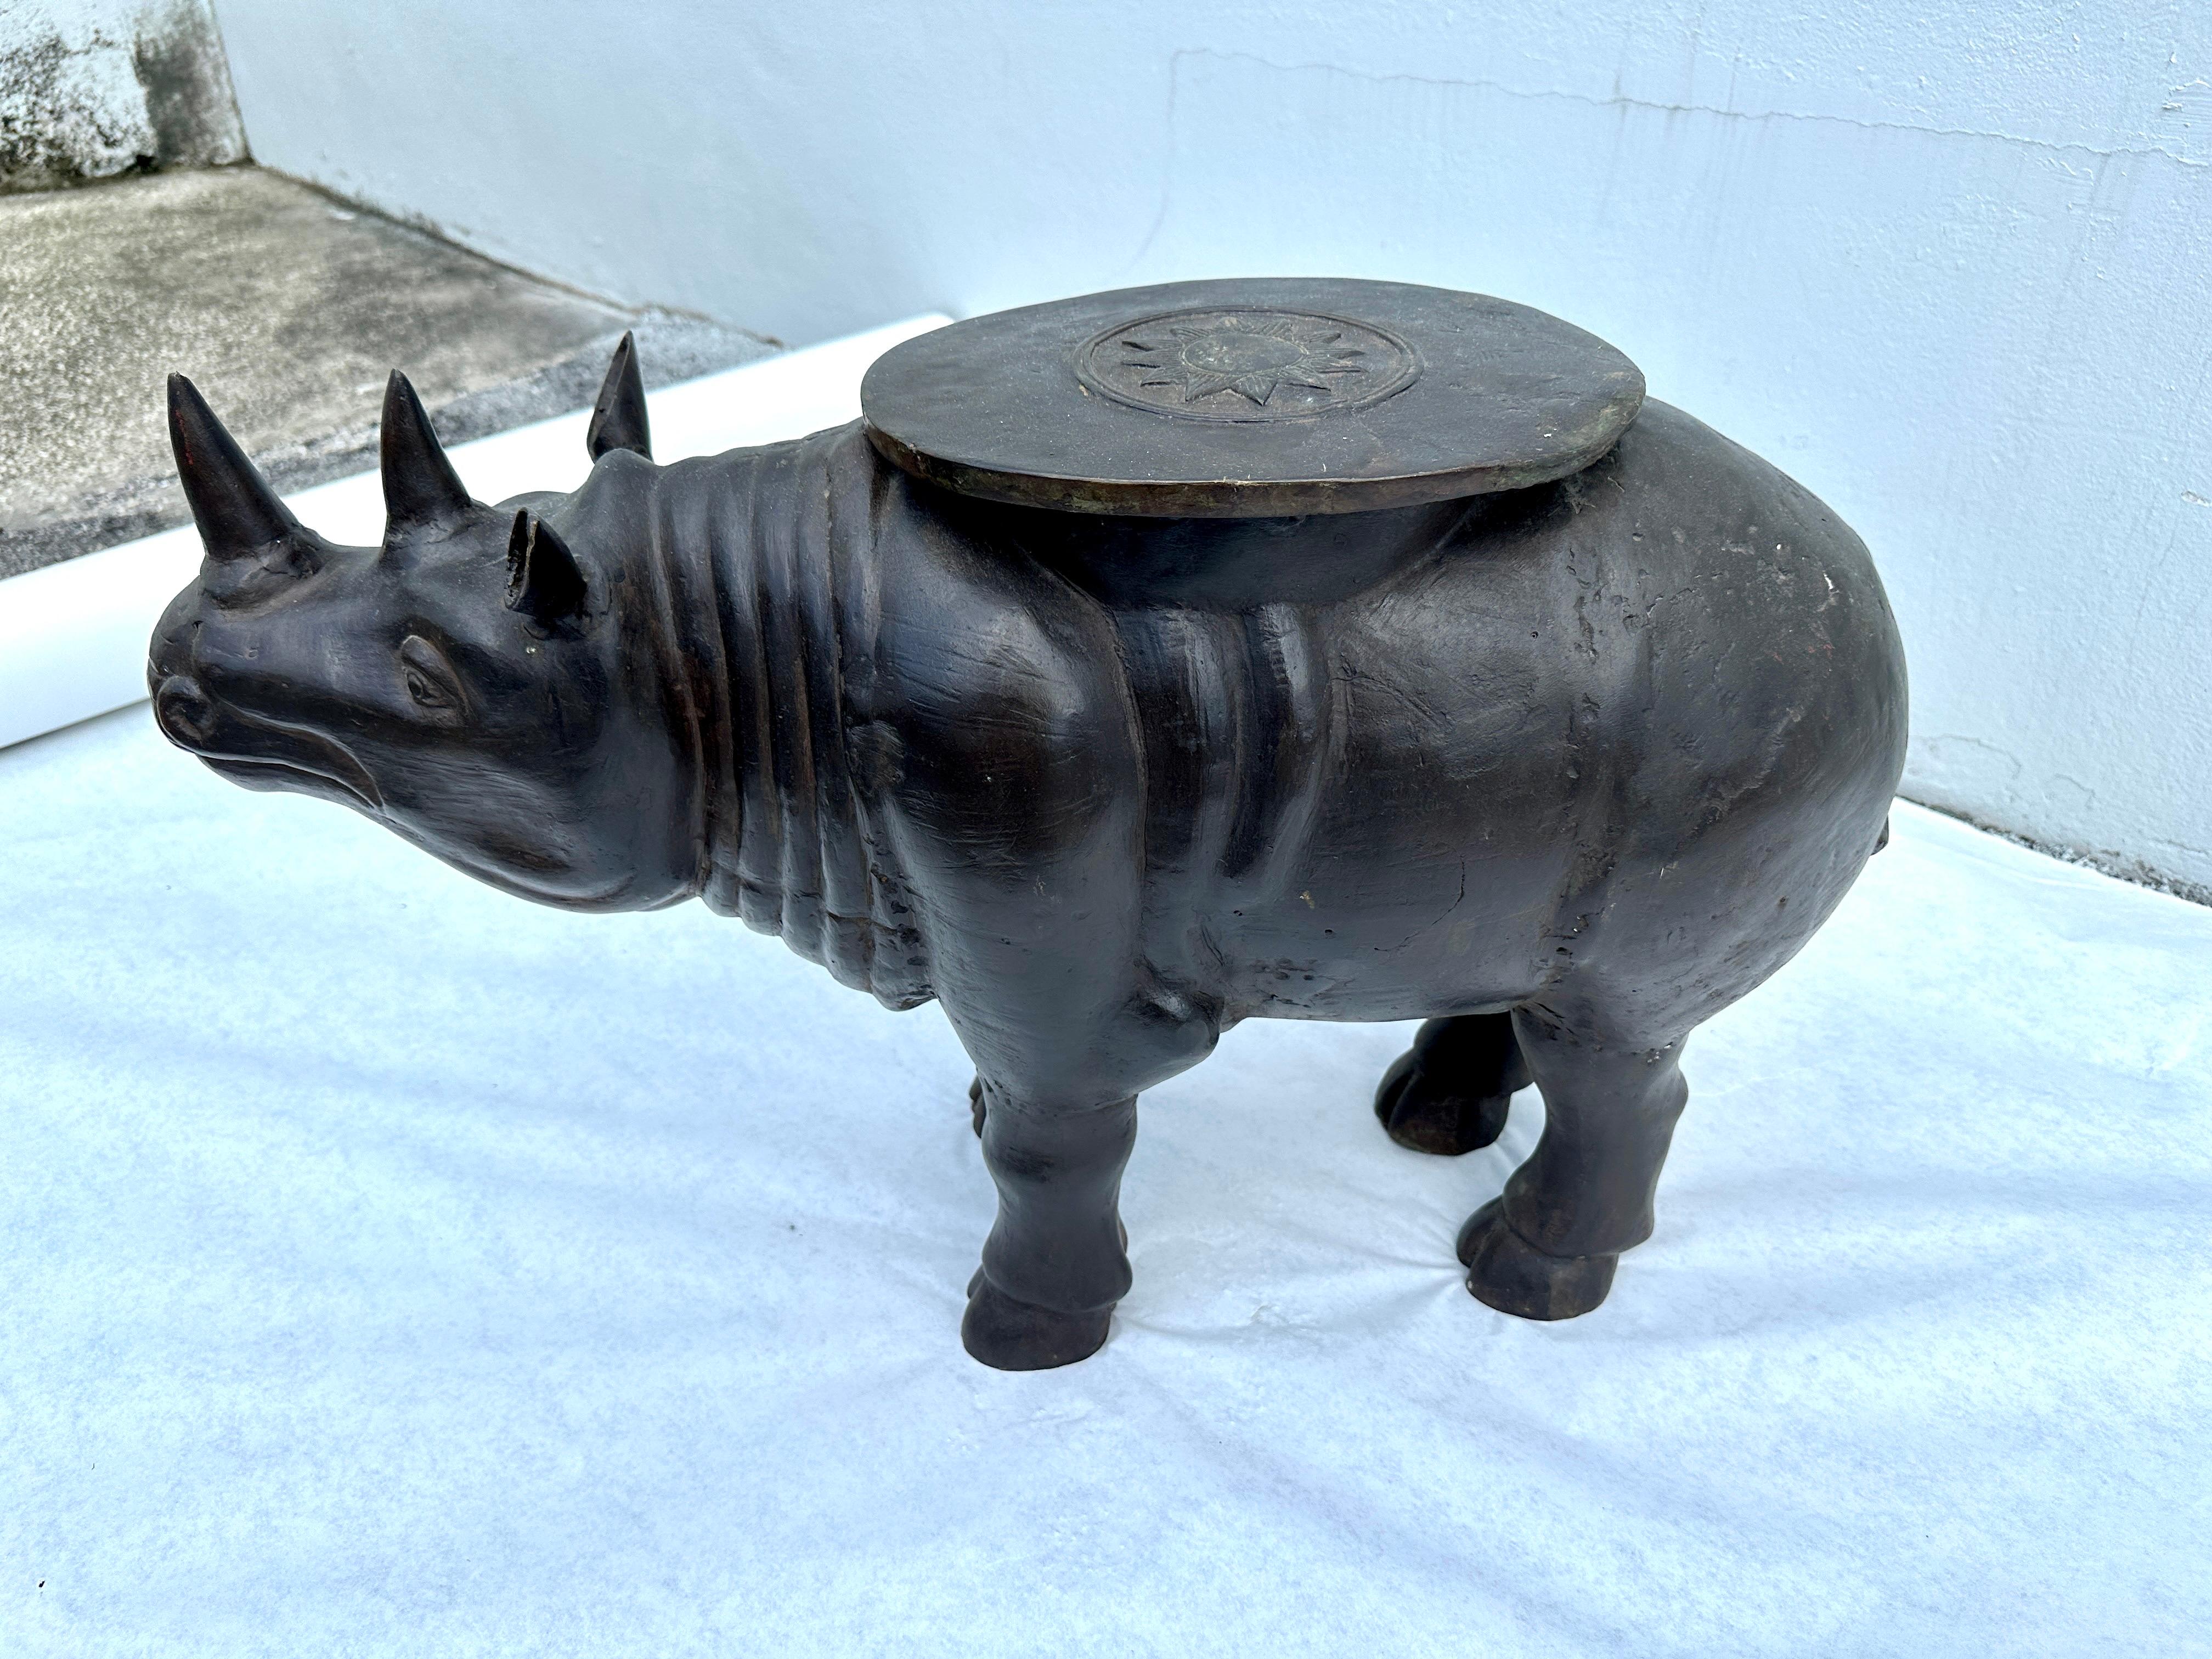 Fantastique statue en bronze vintage d'un rhinocéros patiné avec un médaillon en forme de soleil sur le dessus. Une belle représentation d'un beau rhinocéros. L'attention portée aux détails et la patine étonnante sont le fruit d'années d'amour et de